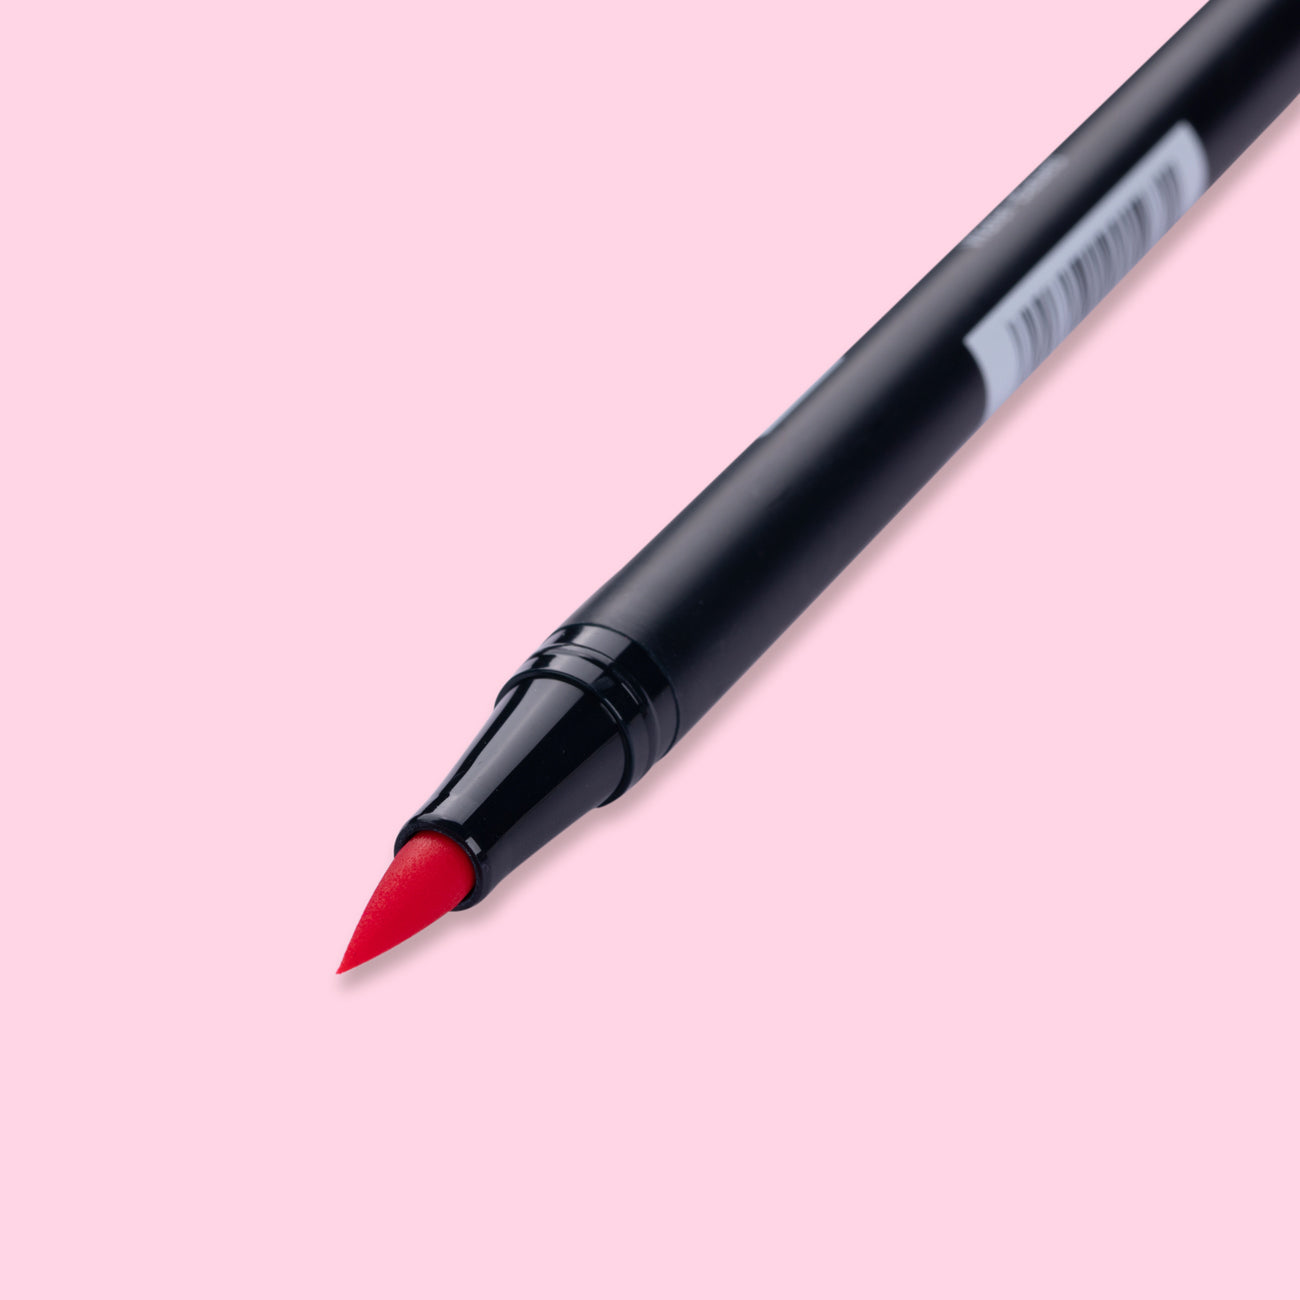 Tombow Dual Brush Pen - 743 - Hot Pink